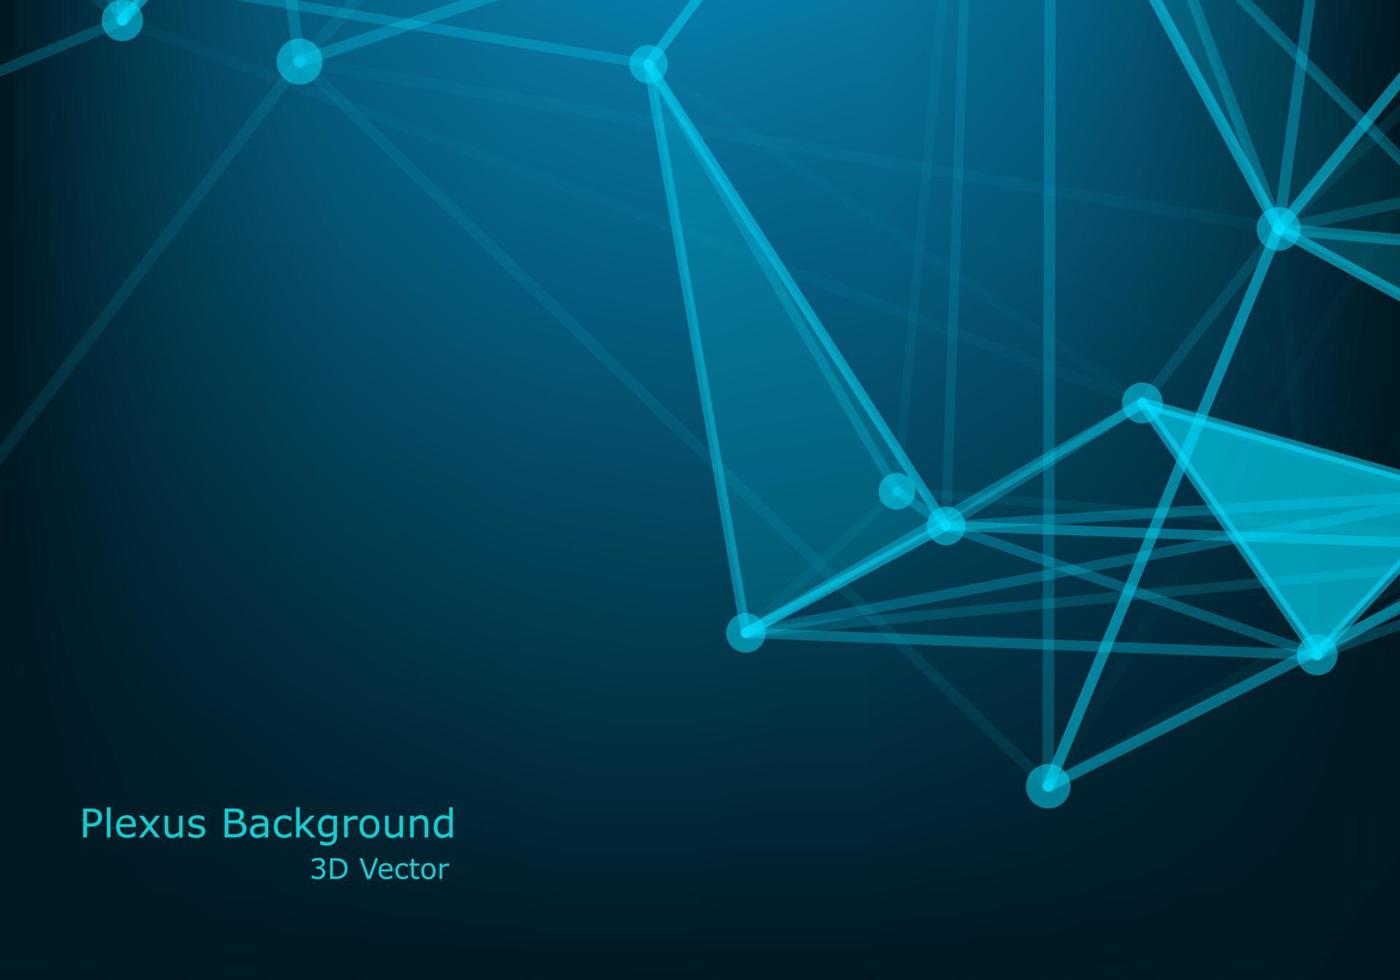 abstracto futurista - tecnología de moléculas con formas poligonales sobre fondo azul oscuro. concepto de tecnología digital de diseño vectorial de ilustración. vector